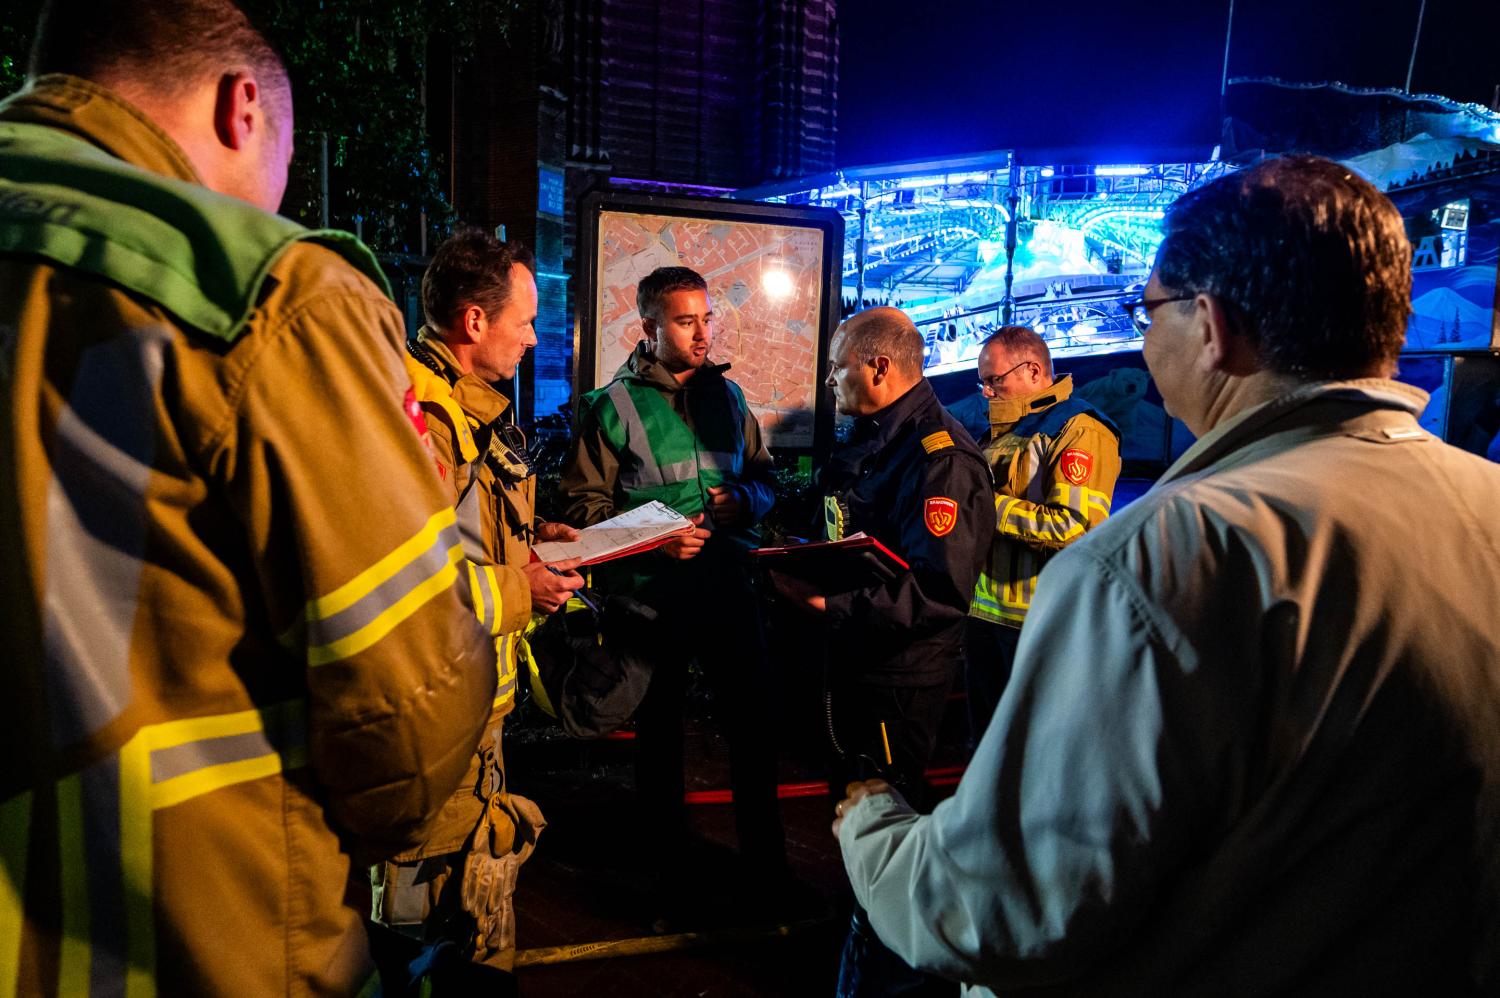 Hulpdiensten waaronder de brandweer hebben een overleg waarbij Burgemeester Vlecken ook bij staat